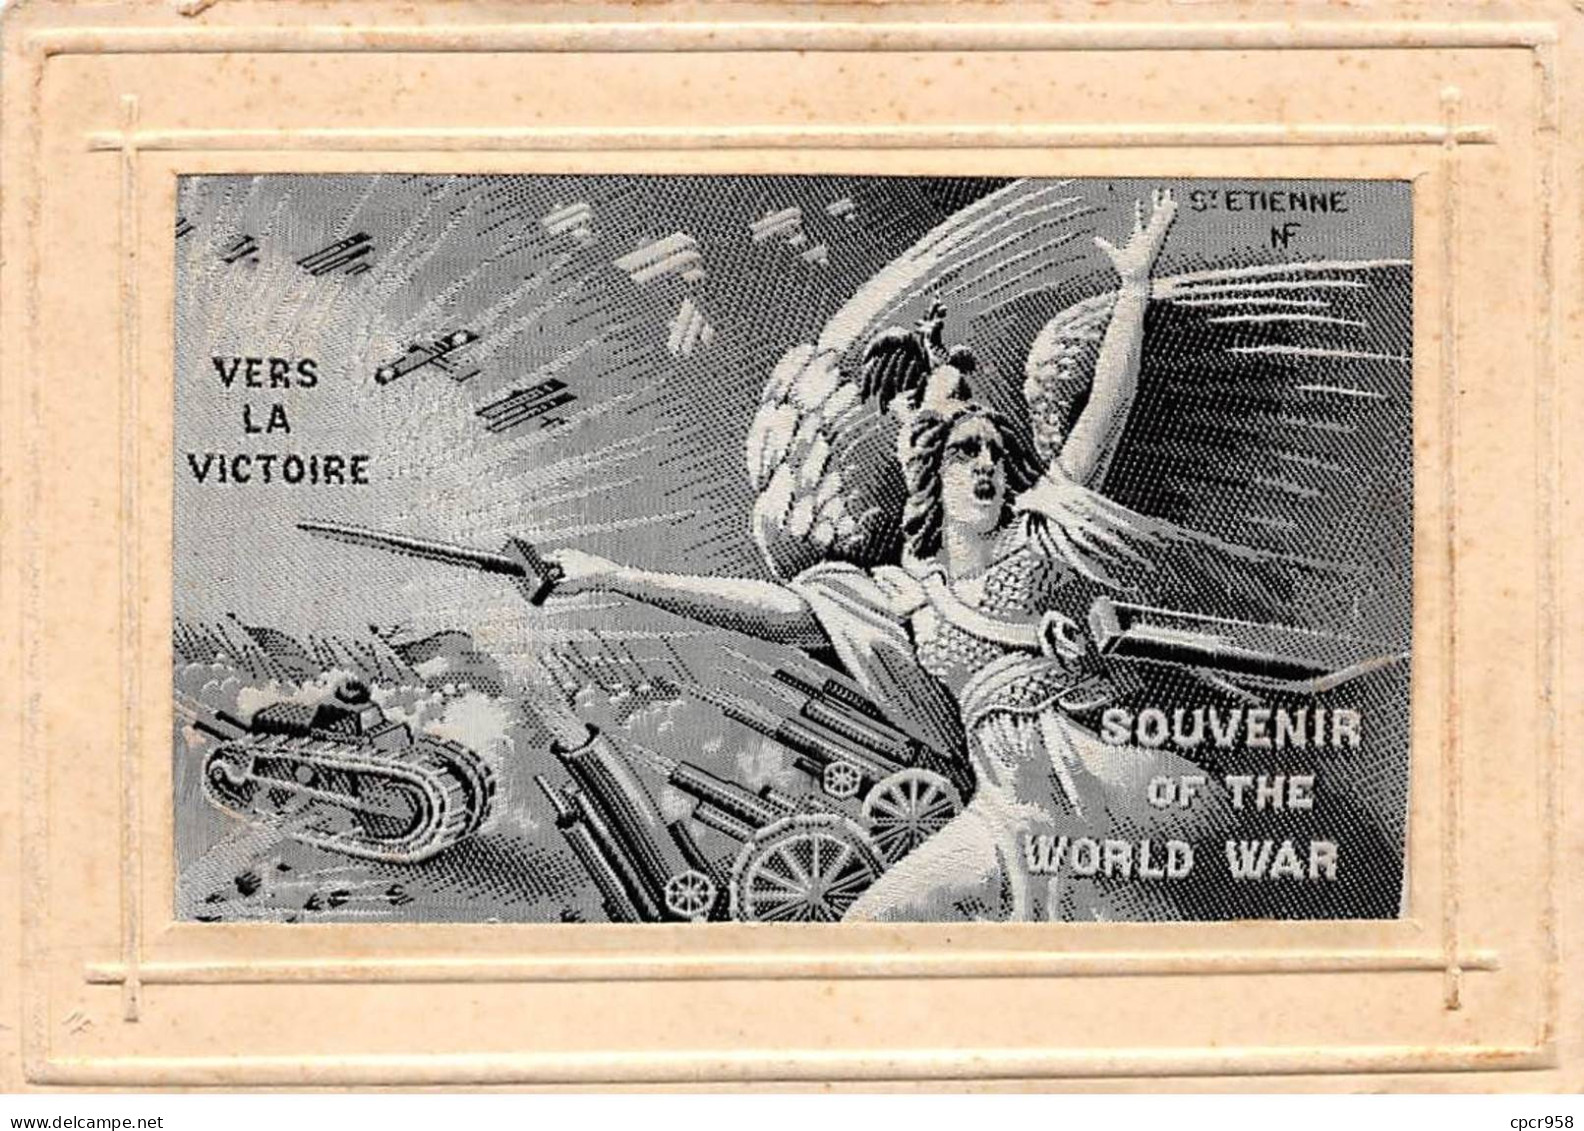 Brodées - N°90853 - Vers La Victoire - Souvenir Of The World War - Carte Tissée Soie.st Etienne - Embroidered